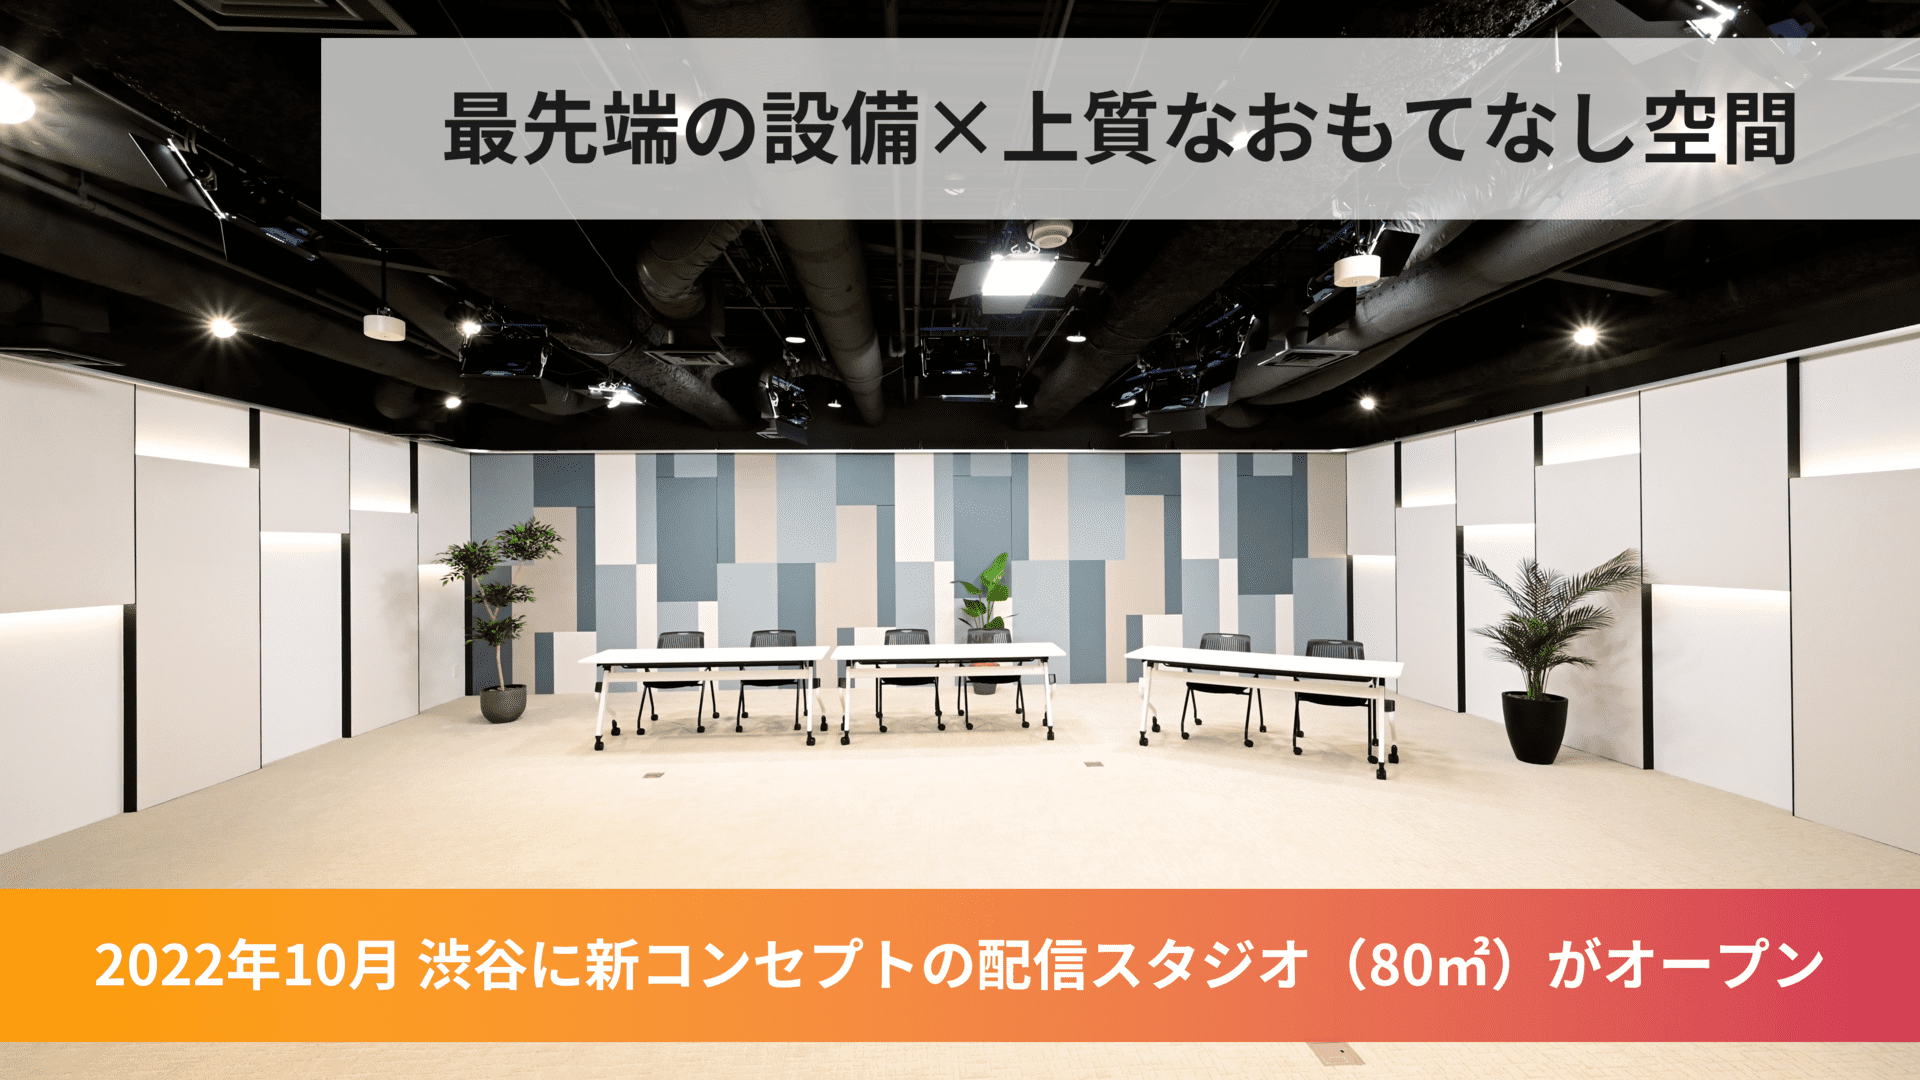 渋谷におしゃれな新スタジオオープン - 配信スタジオ「PLAY STUDIO」